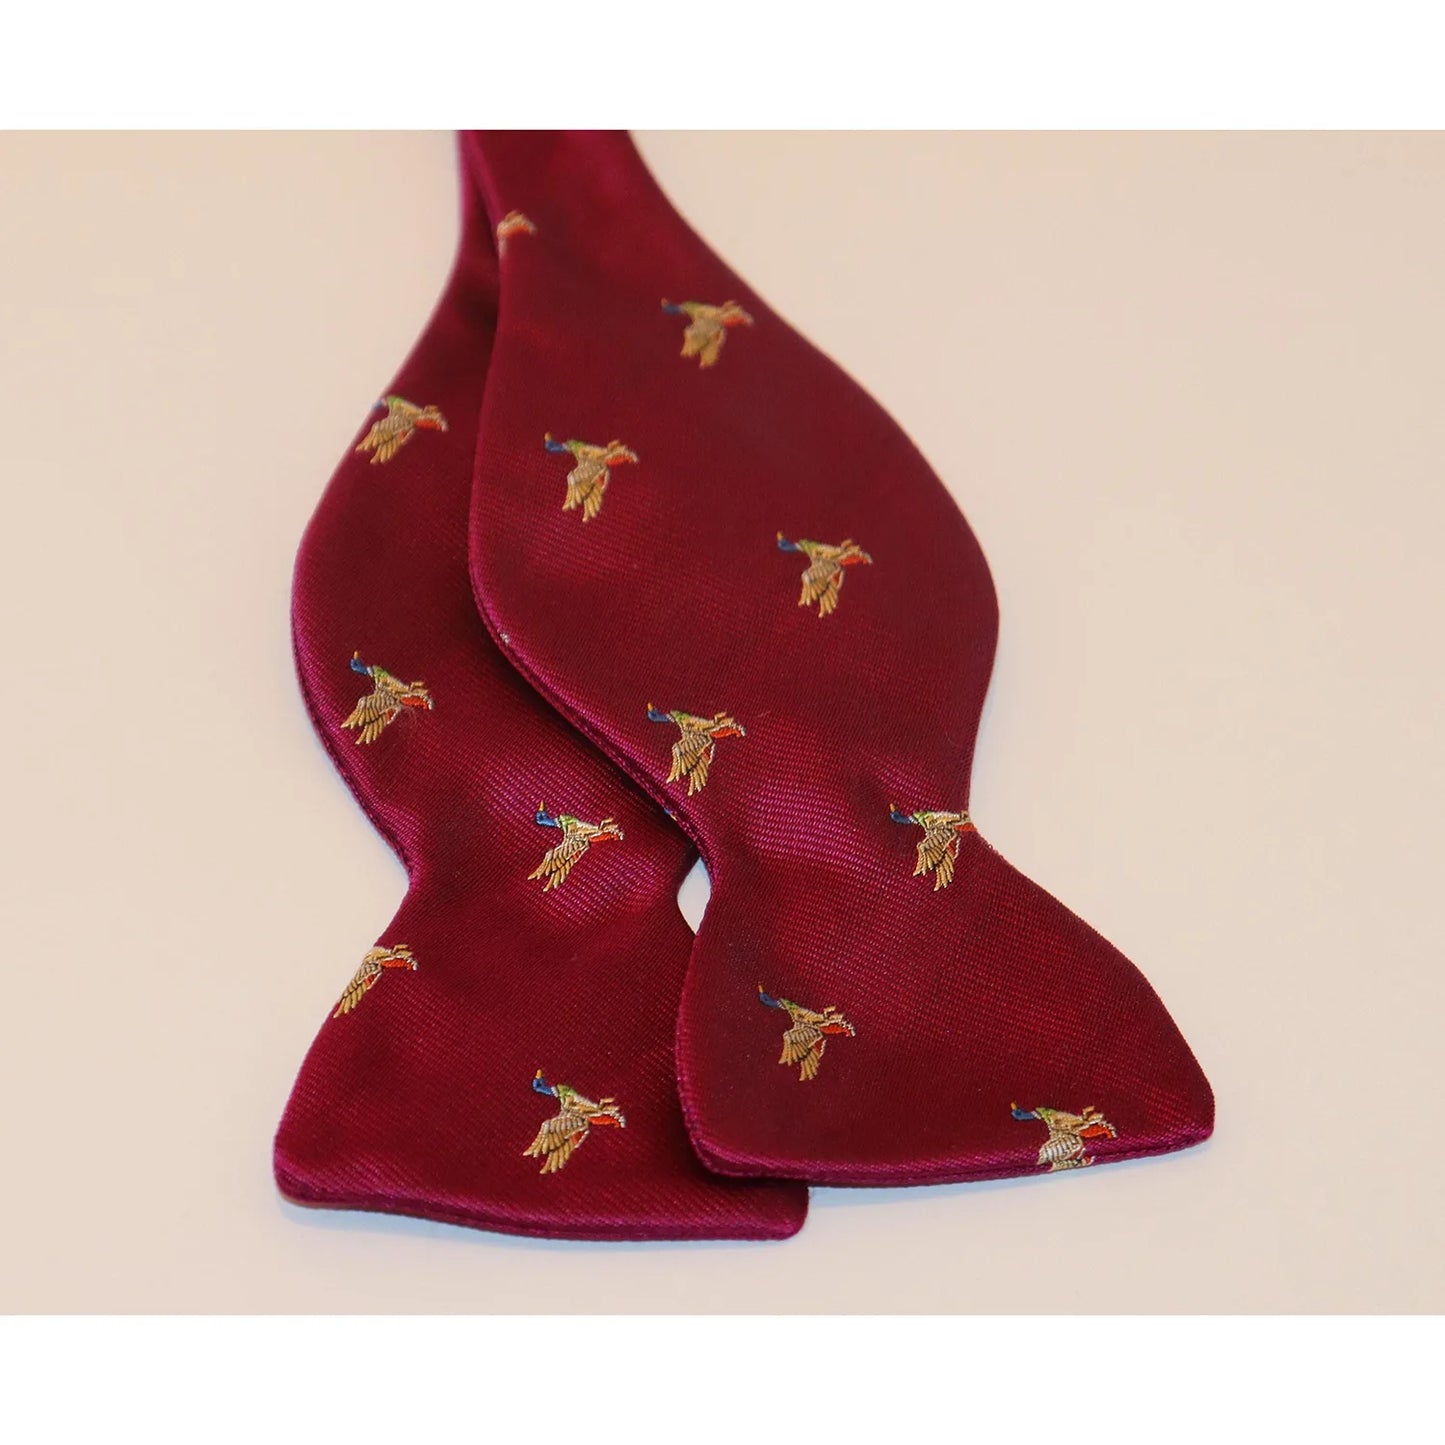 R. Hanauer Bow Tie - Pink with Mallard Ducks